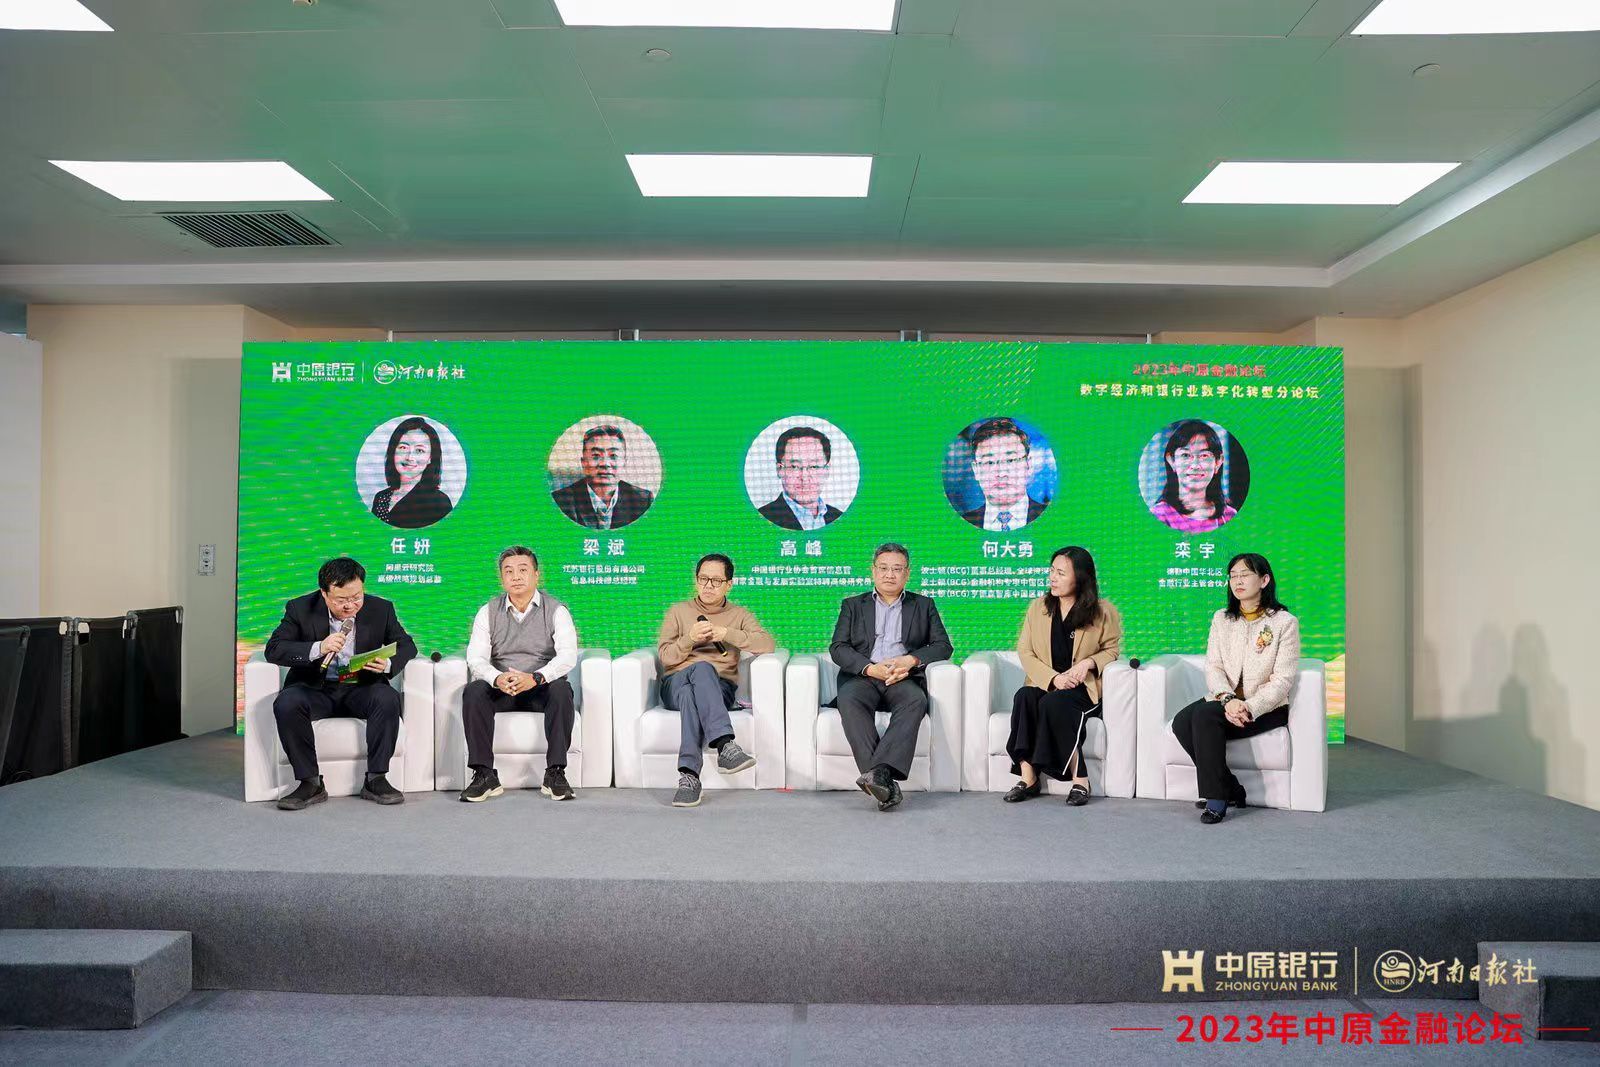 2023年中原金融论坛在郑州举行 探讨银行业如何加速推动数字化转型